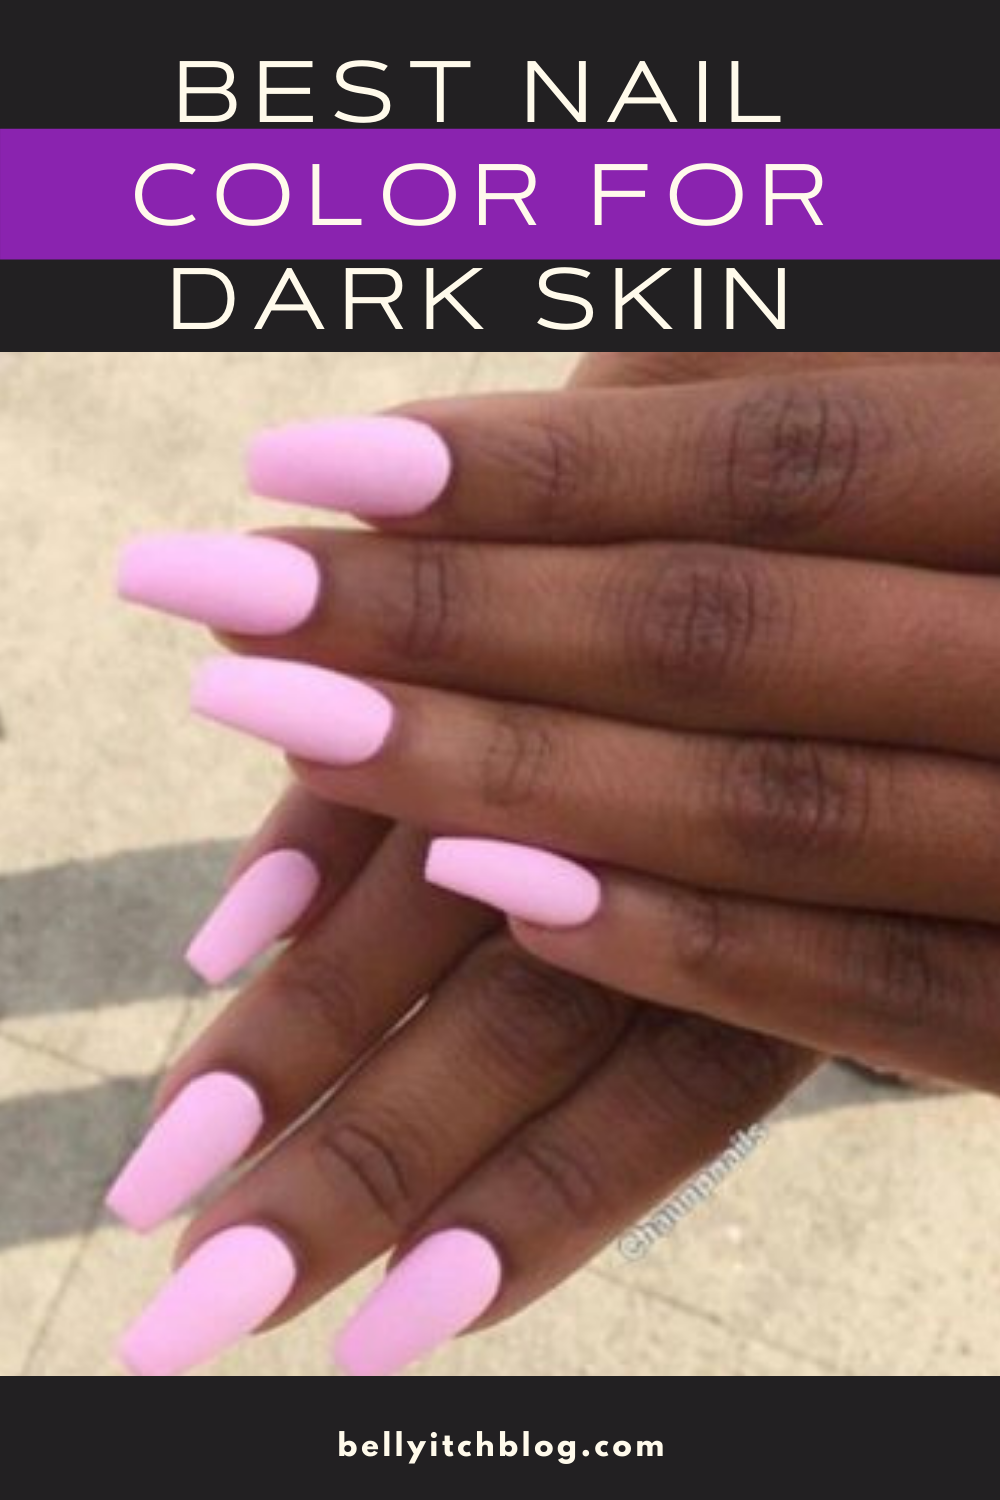 11 Best Nail Colors for Dark Skin - Nail Polish Shades for Medium and Deep  Skin Tones